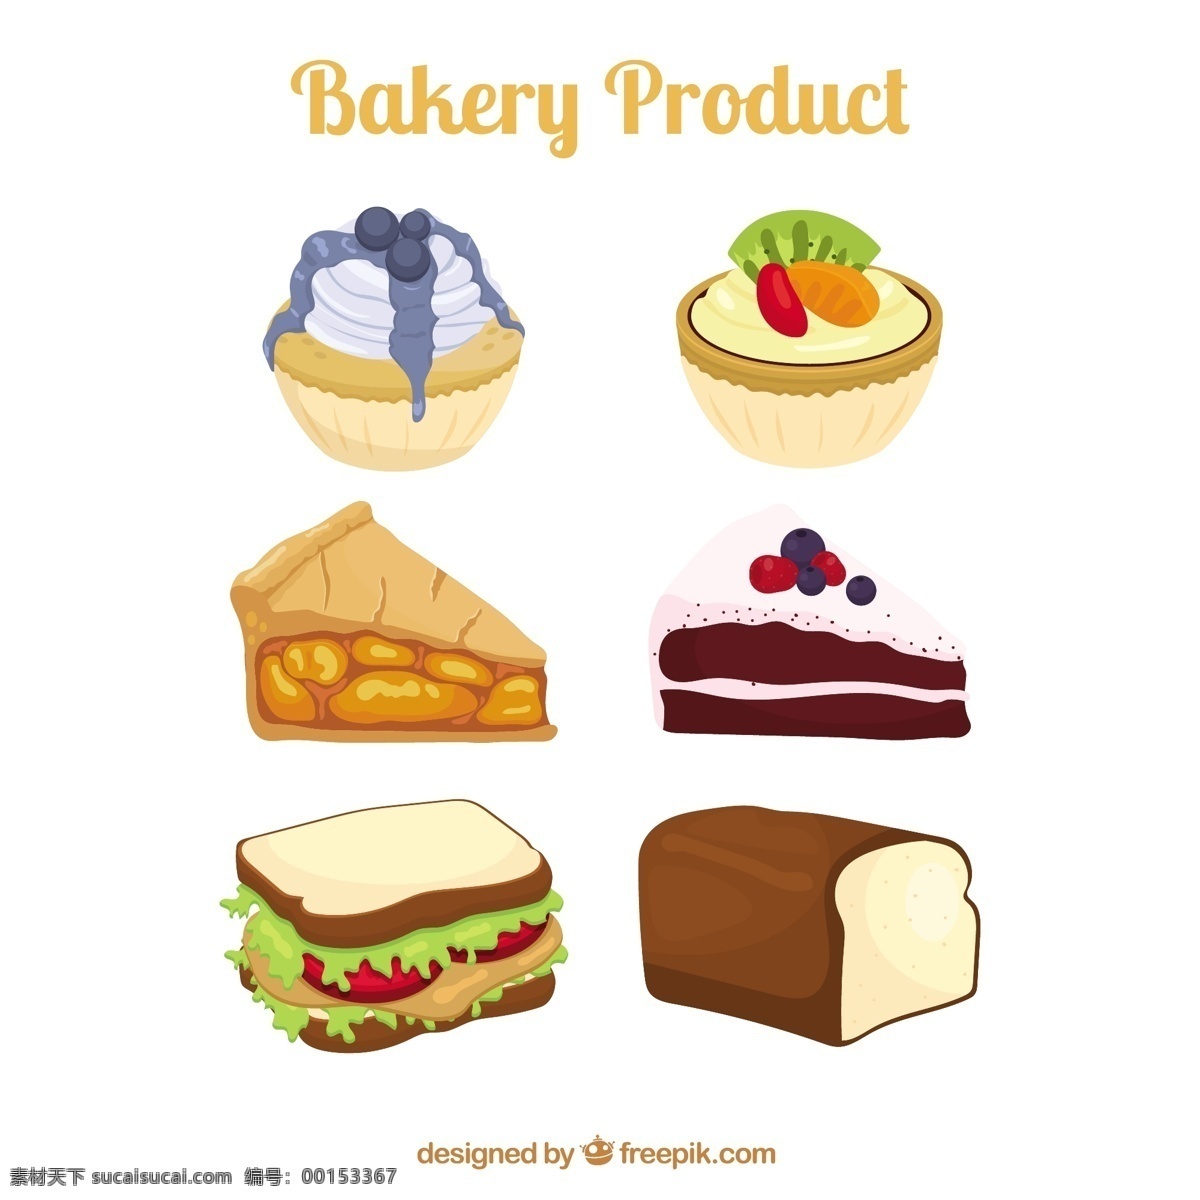 面包店 产品 说明 食品 蛋糕 面包 糕点 甜 好吃 产品说明 咖啡馆 白色